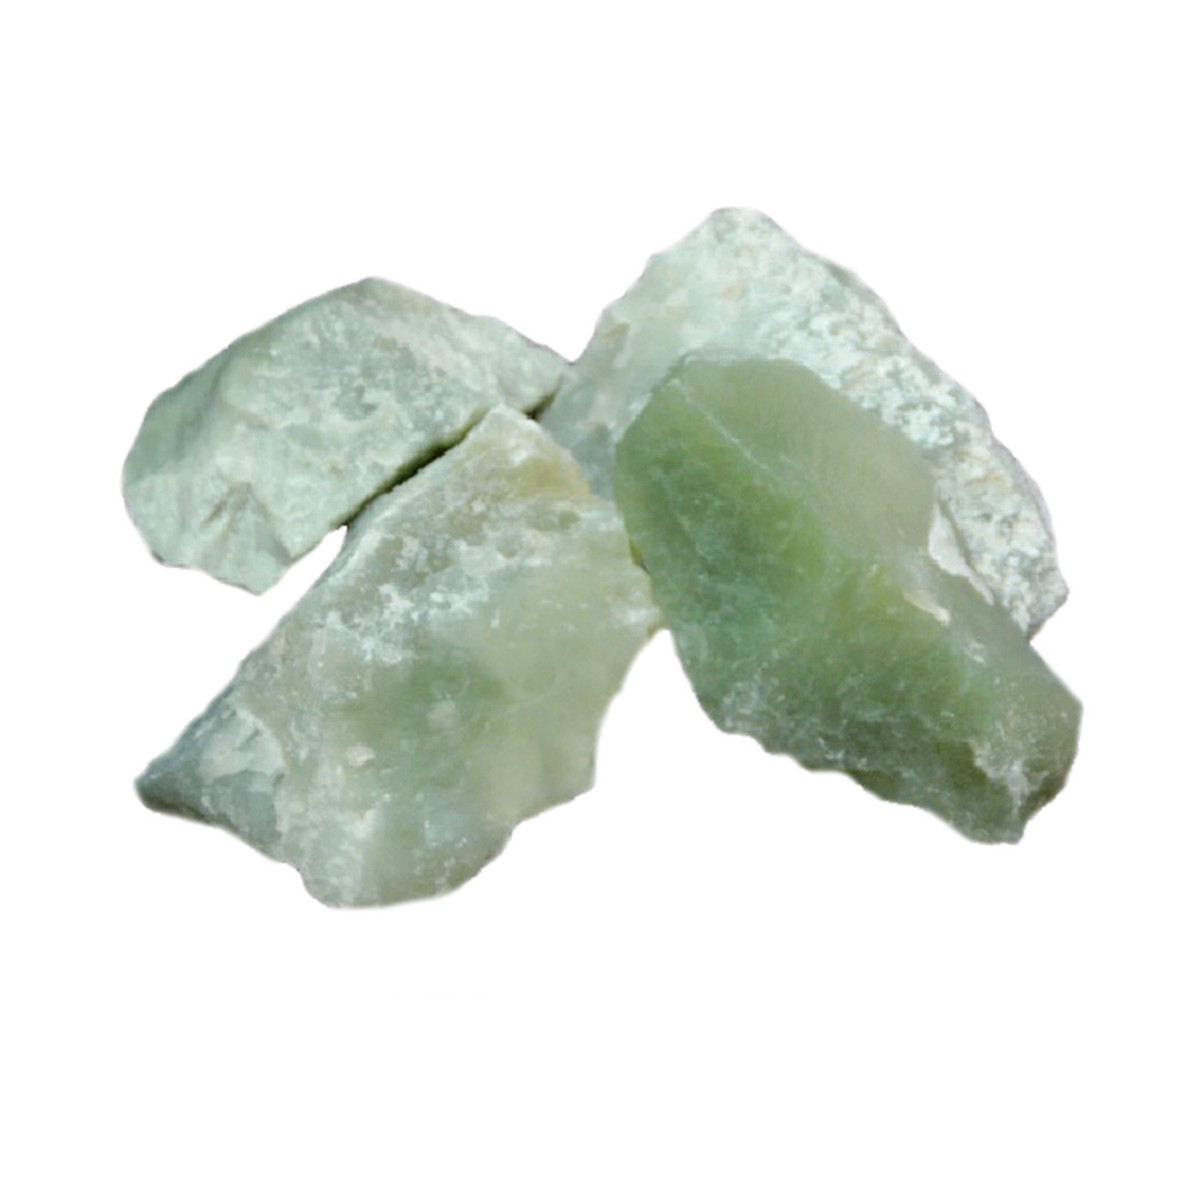 Jade de Chine Brut